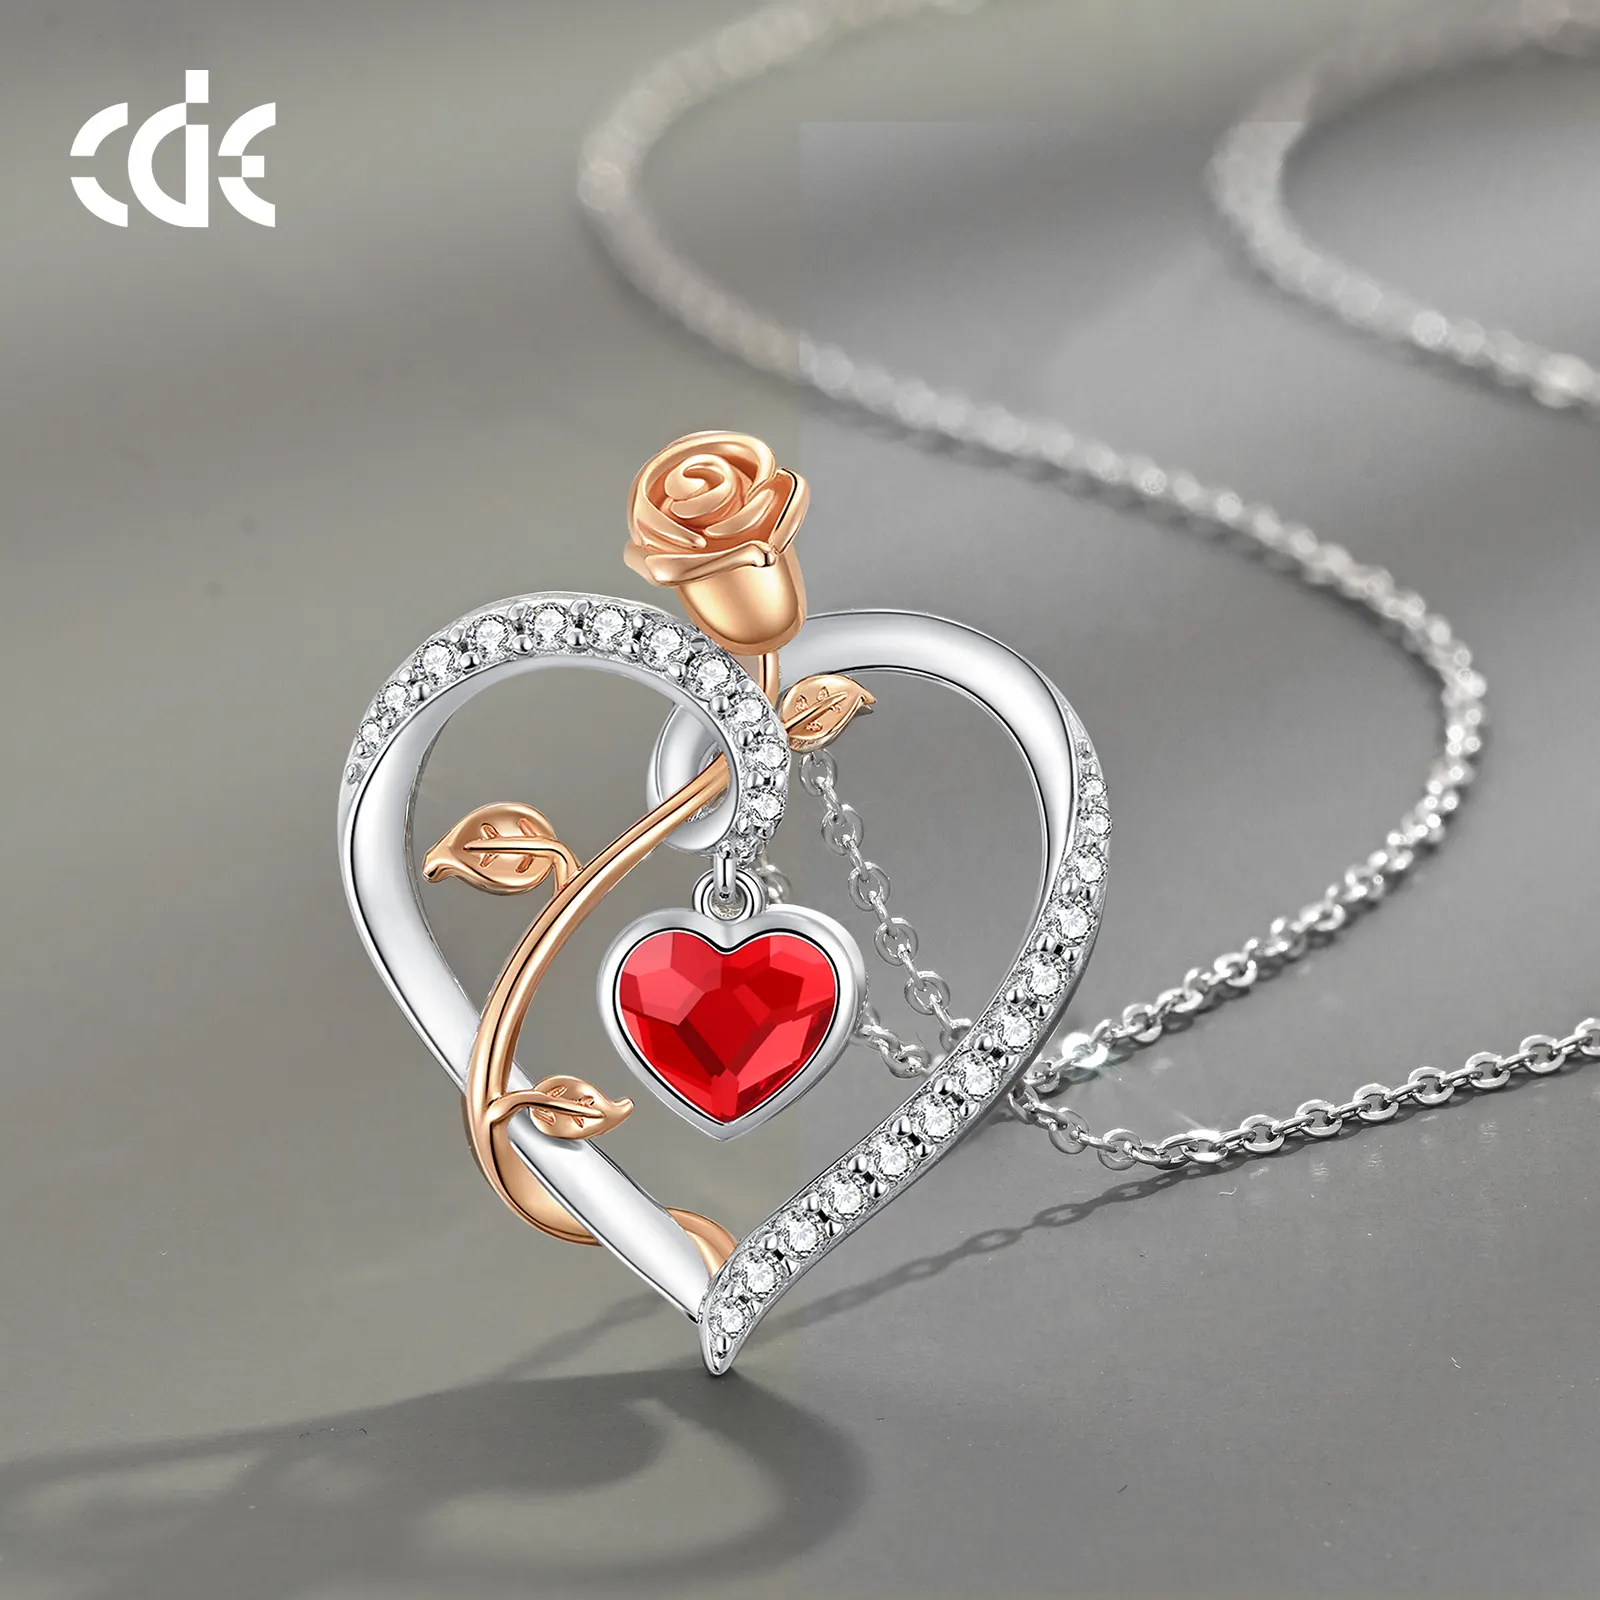 CDE SSYN001 güzel takı 925 ayar gümüş taş kırmızı kristaller zirkonya kolye ile toptan gül çiçek tasarım kolye